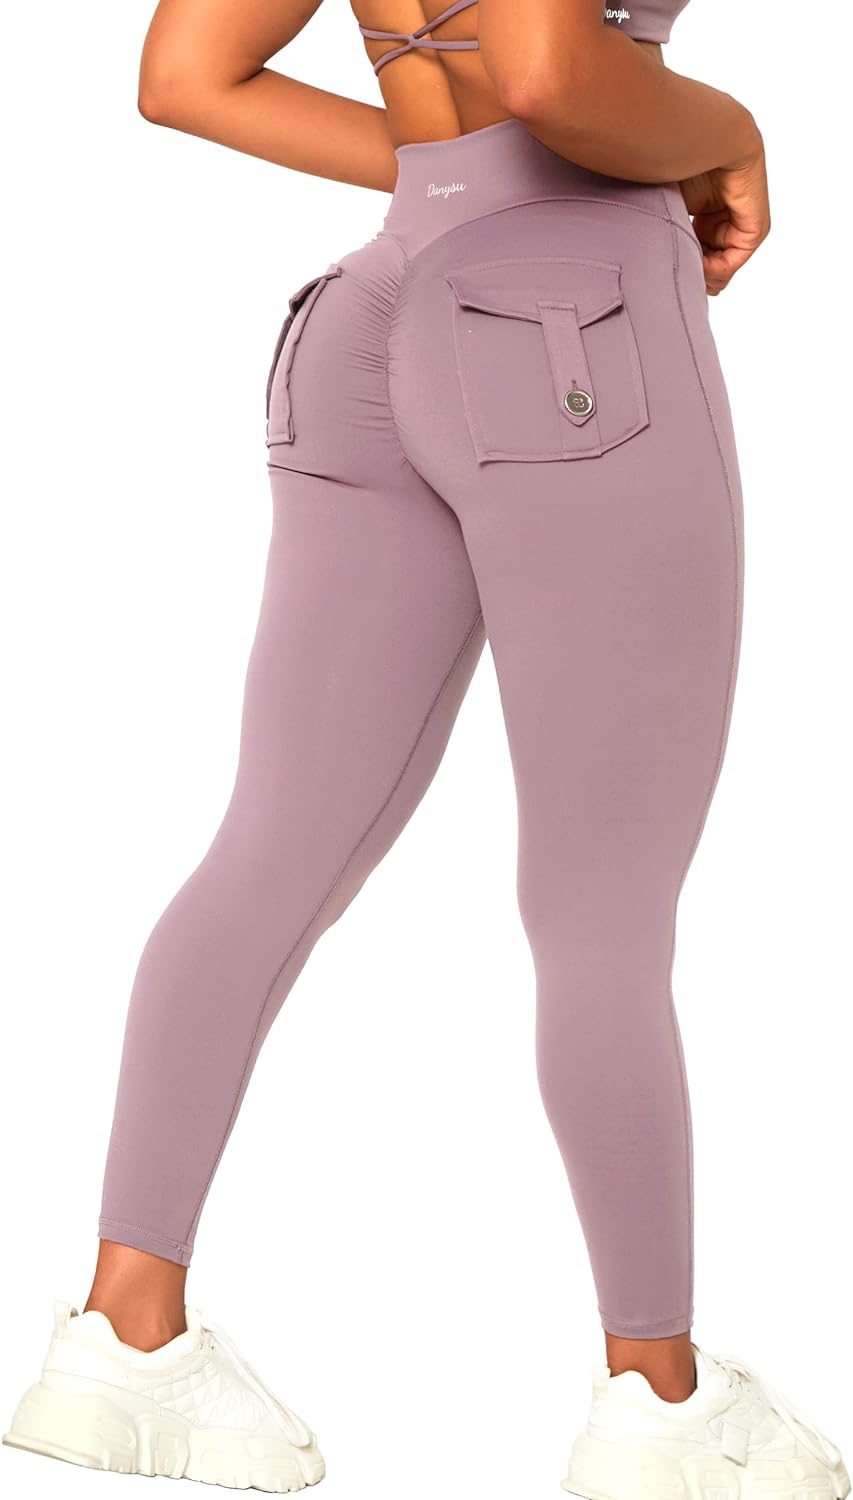 Danysu Scrunch Butt Pocket Leggings for Women Cross Waist Workout